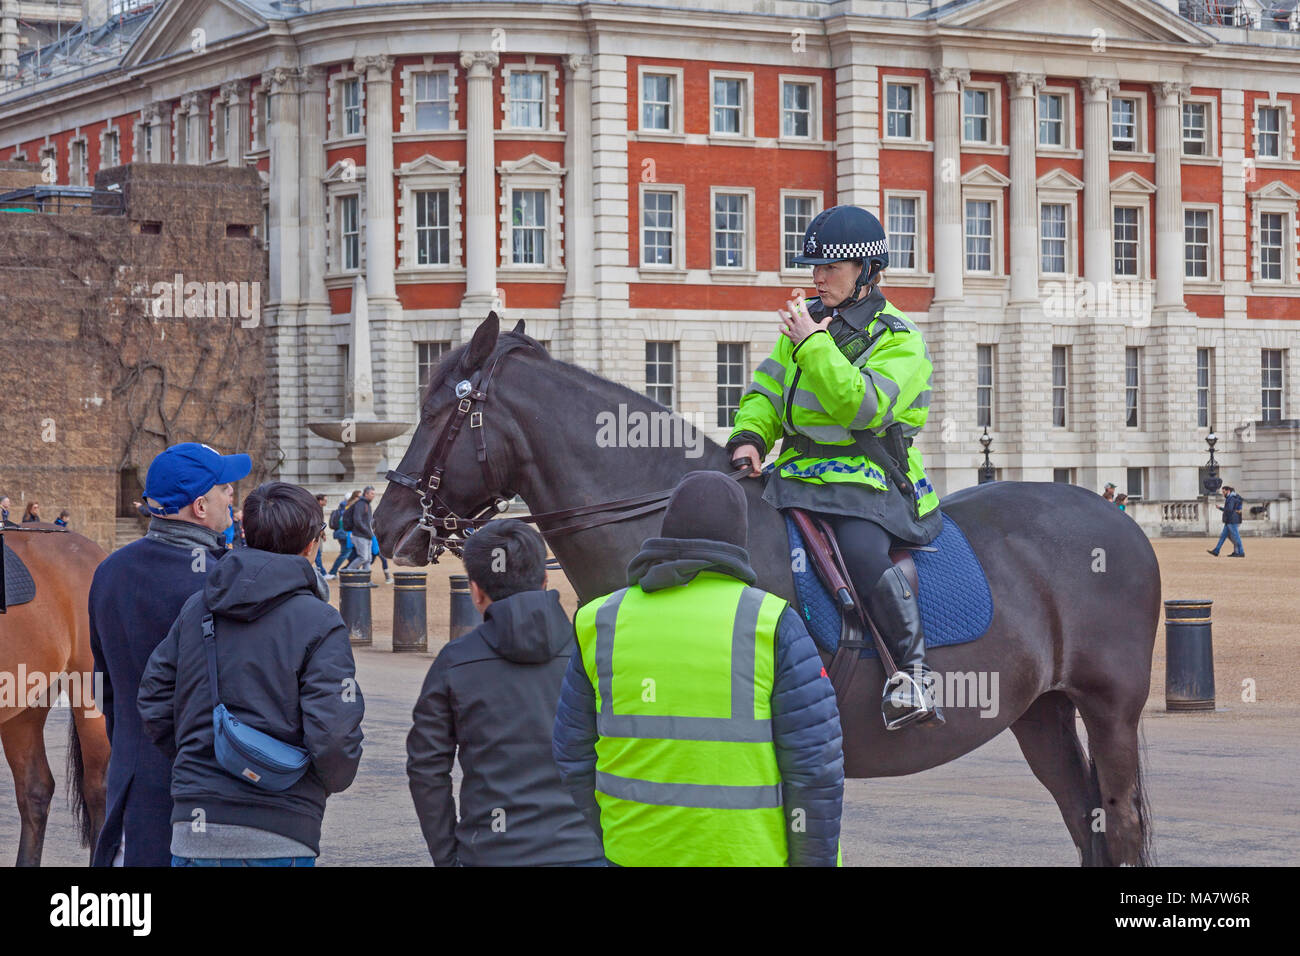 Londres, Westminster a monté une policière à discuter avec les touristes à Horse Guards Parade Banque D'Images